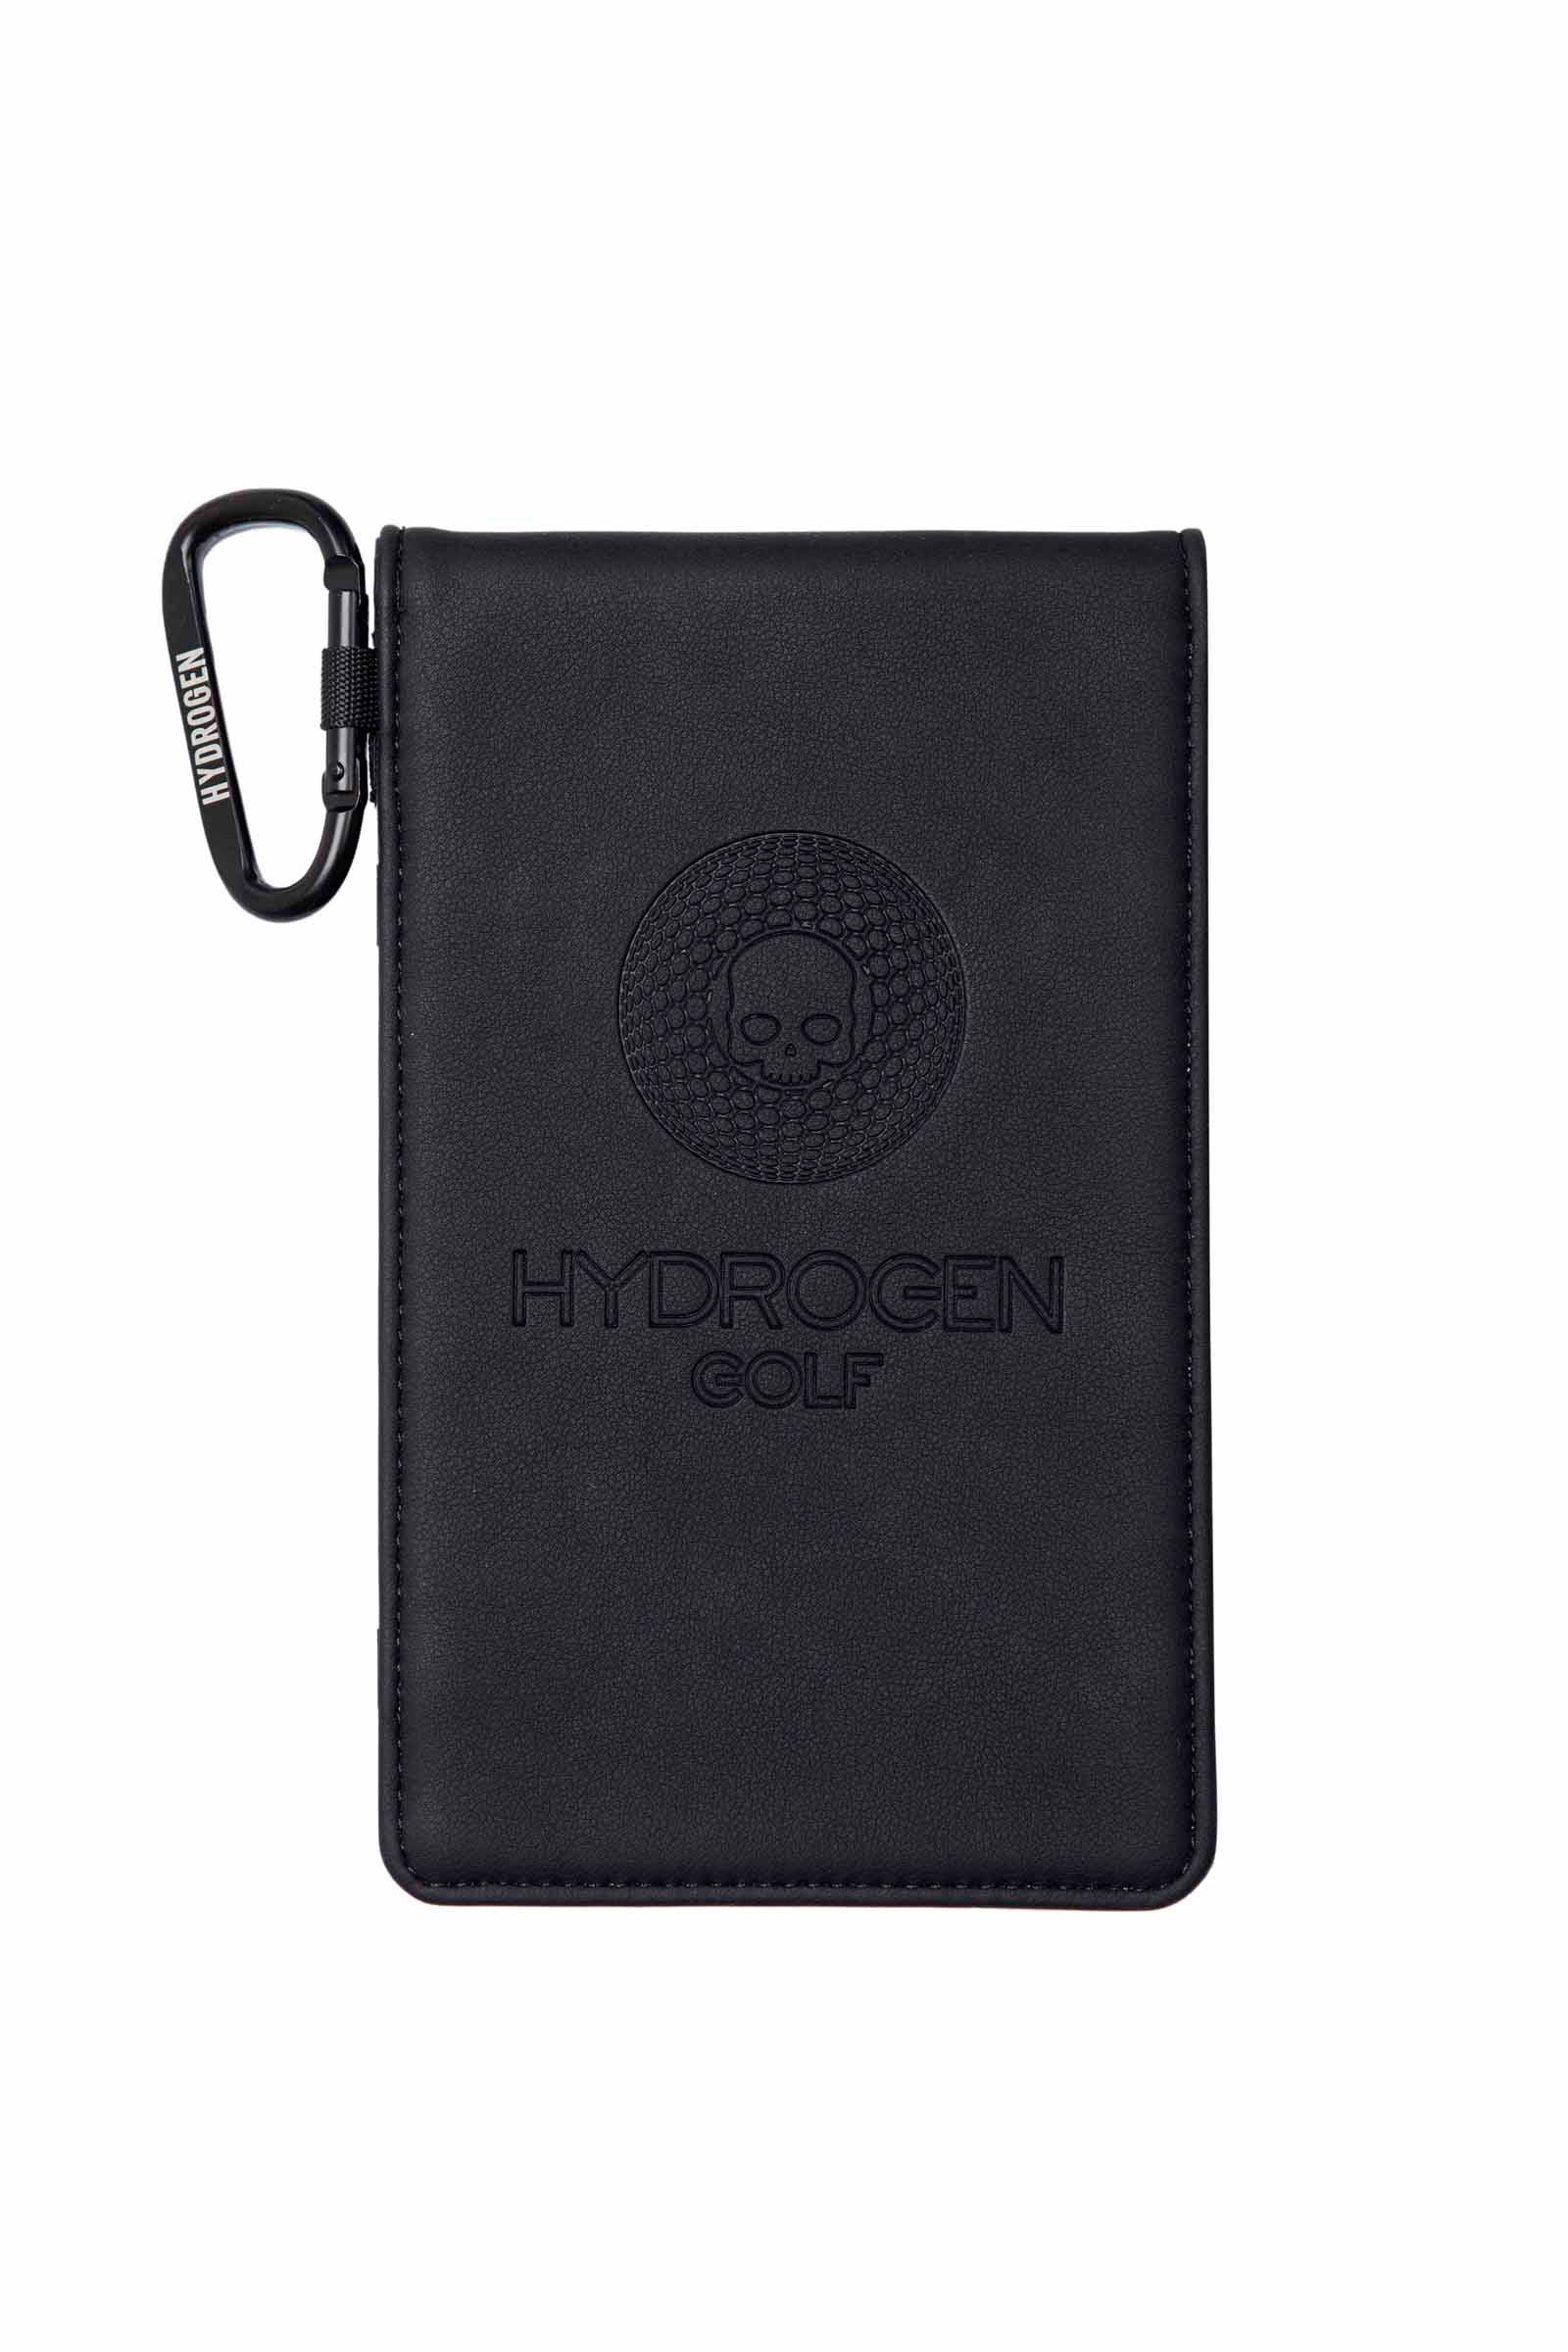 SCORE CARD - BLACK - Abbigliamento sportivo | Hydrogen